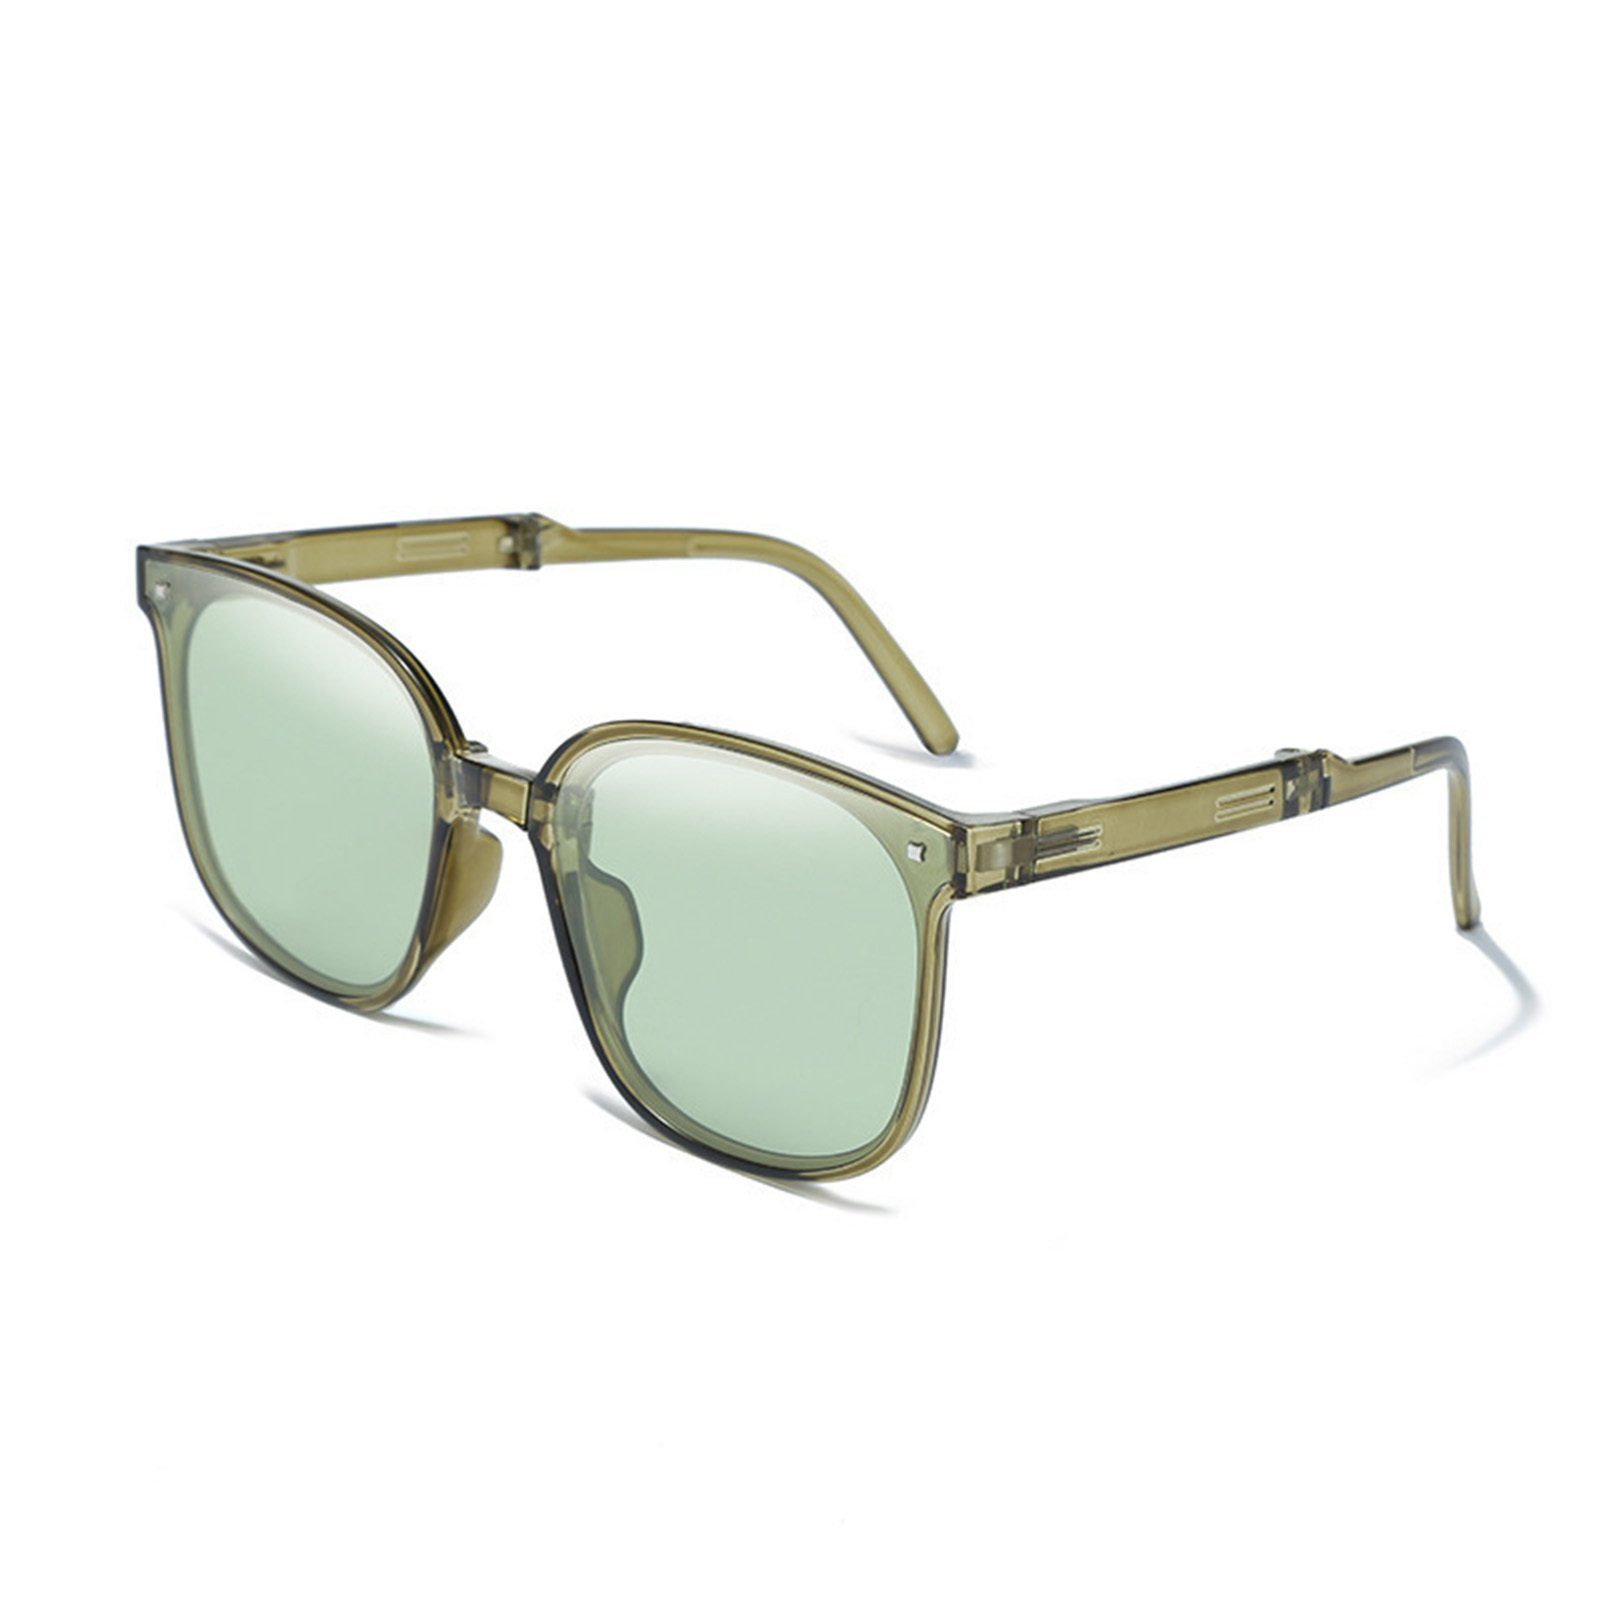 Tragbar, Sonnenschutzbrille Blendfrei, dark green Damen-Sonnenbrille, Retrosonnenbrille Faltbare Blusmart